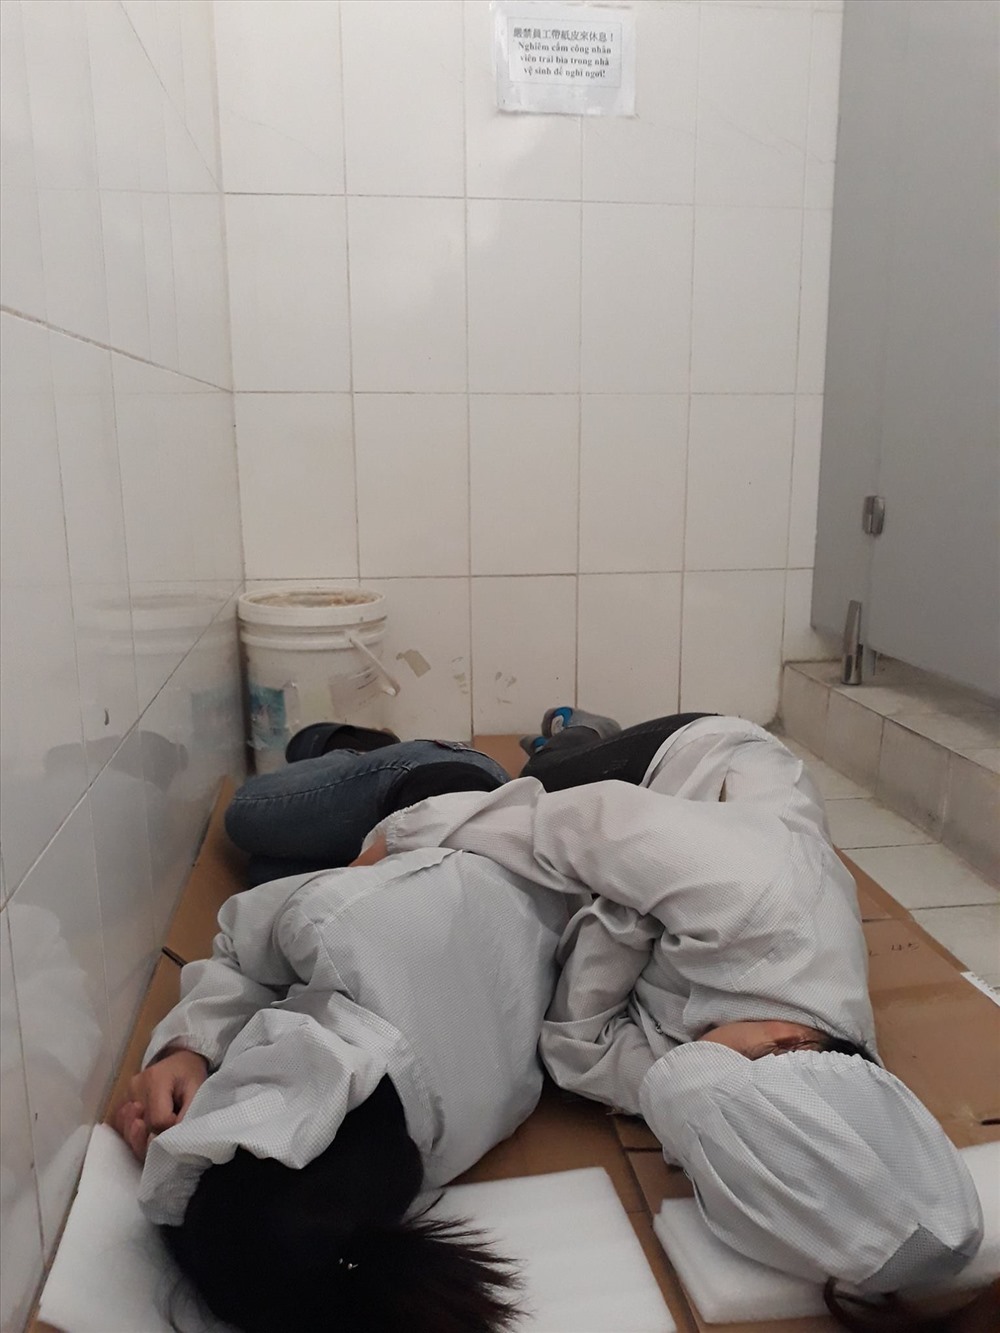 Công nhân tranh ngủ ngả lưng buổi trưa trong nhà vệ sinh Cty. Ảnh đoạt giải nhất cuộc thi.